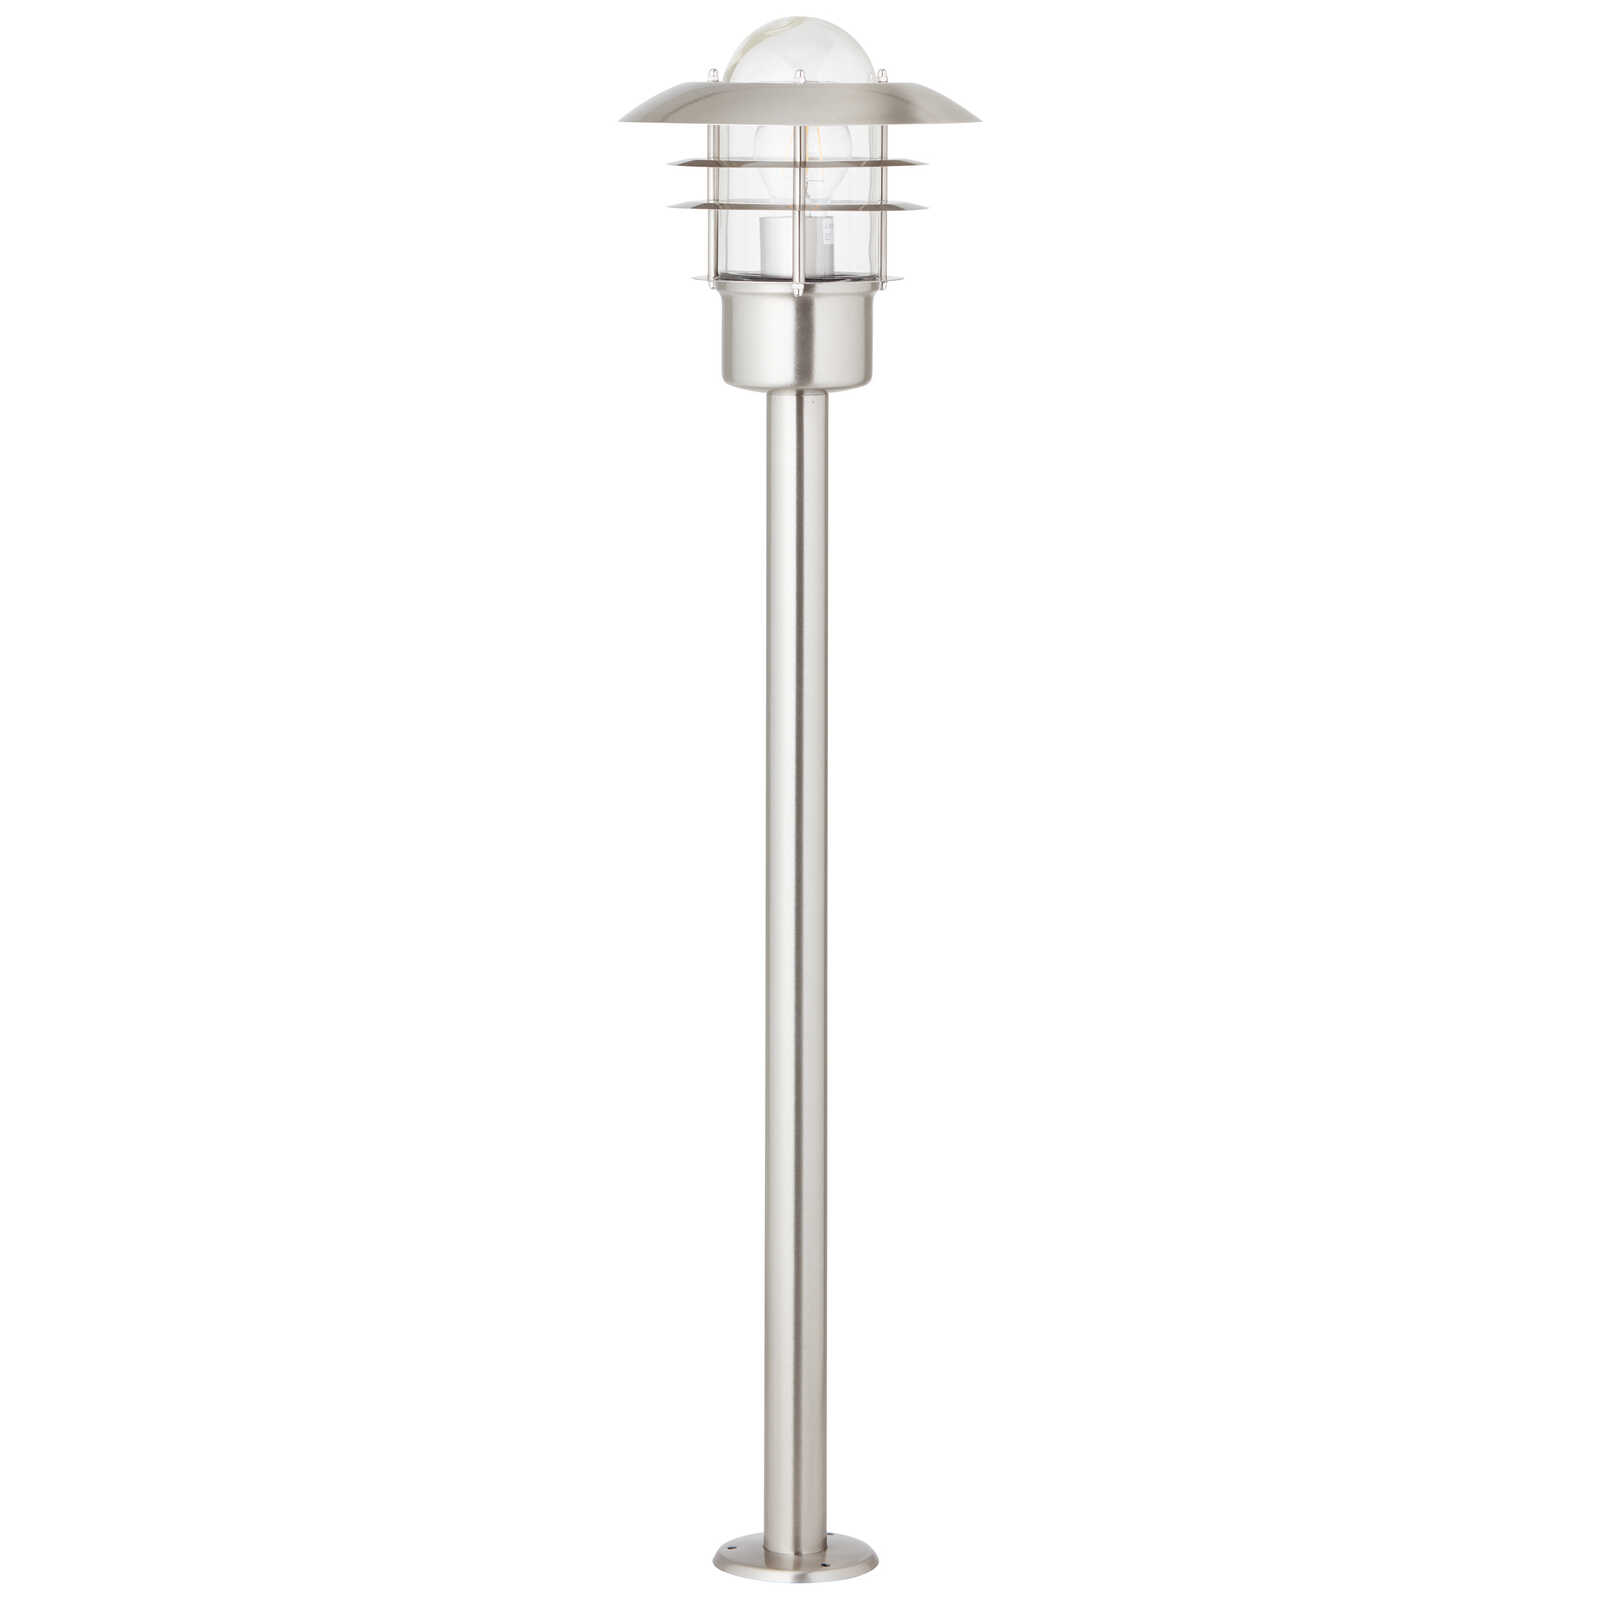             Metal outdoor floor lamp - Pepe 2 - Metallic
        